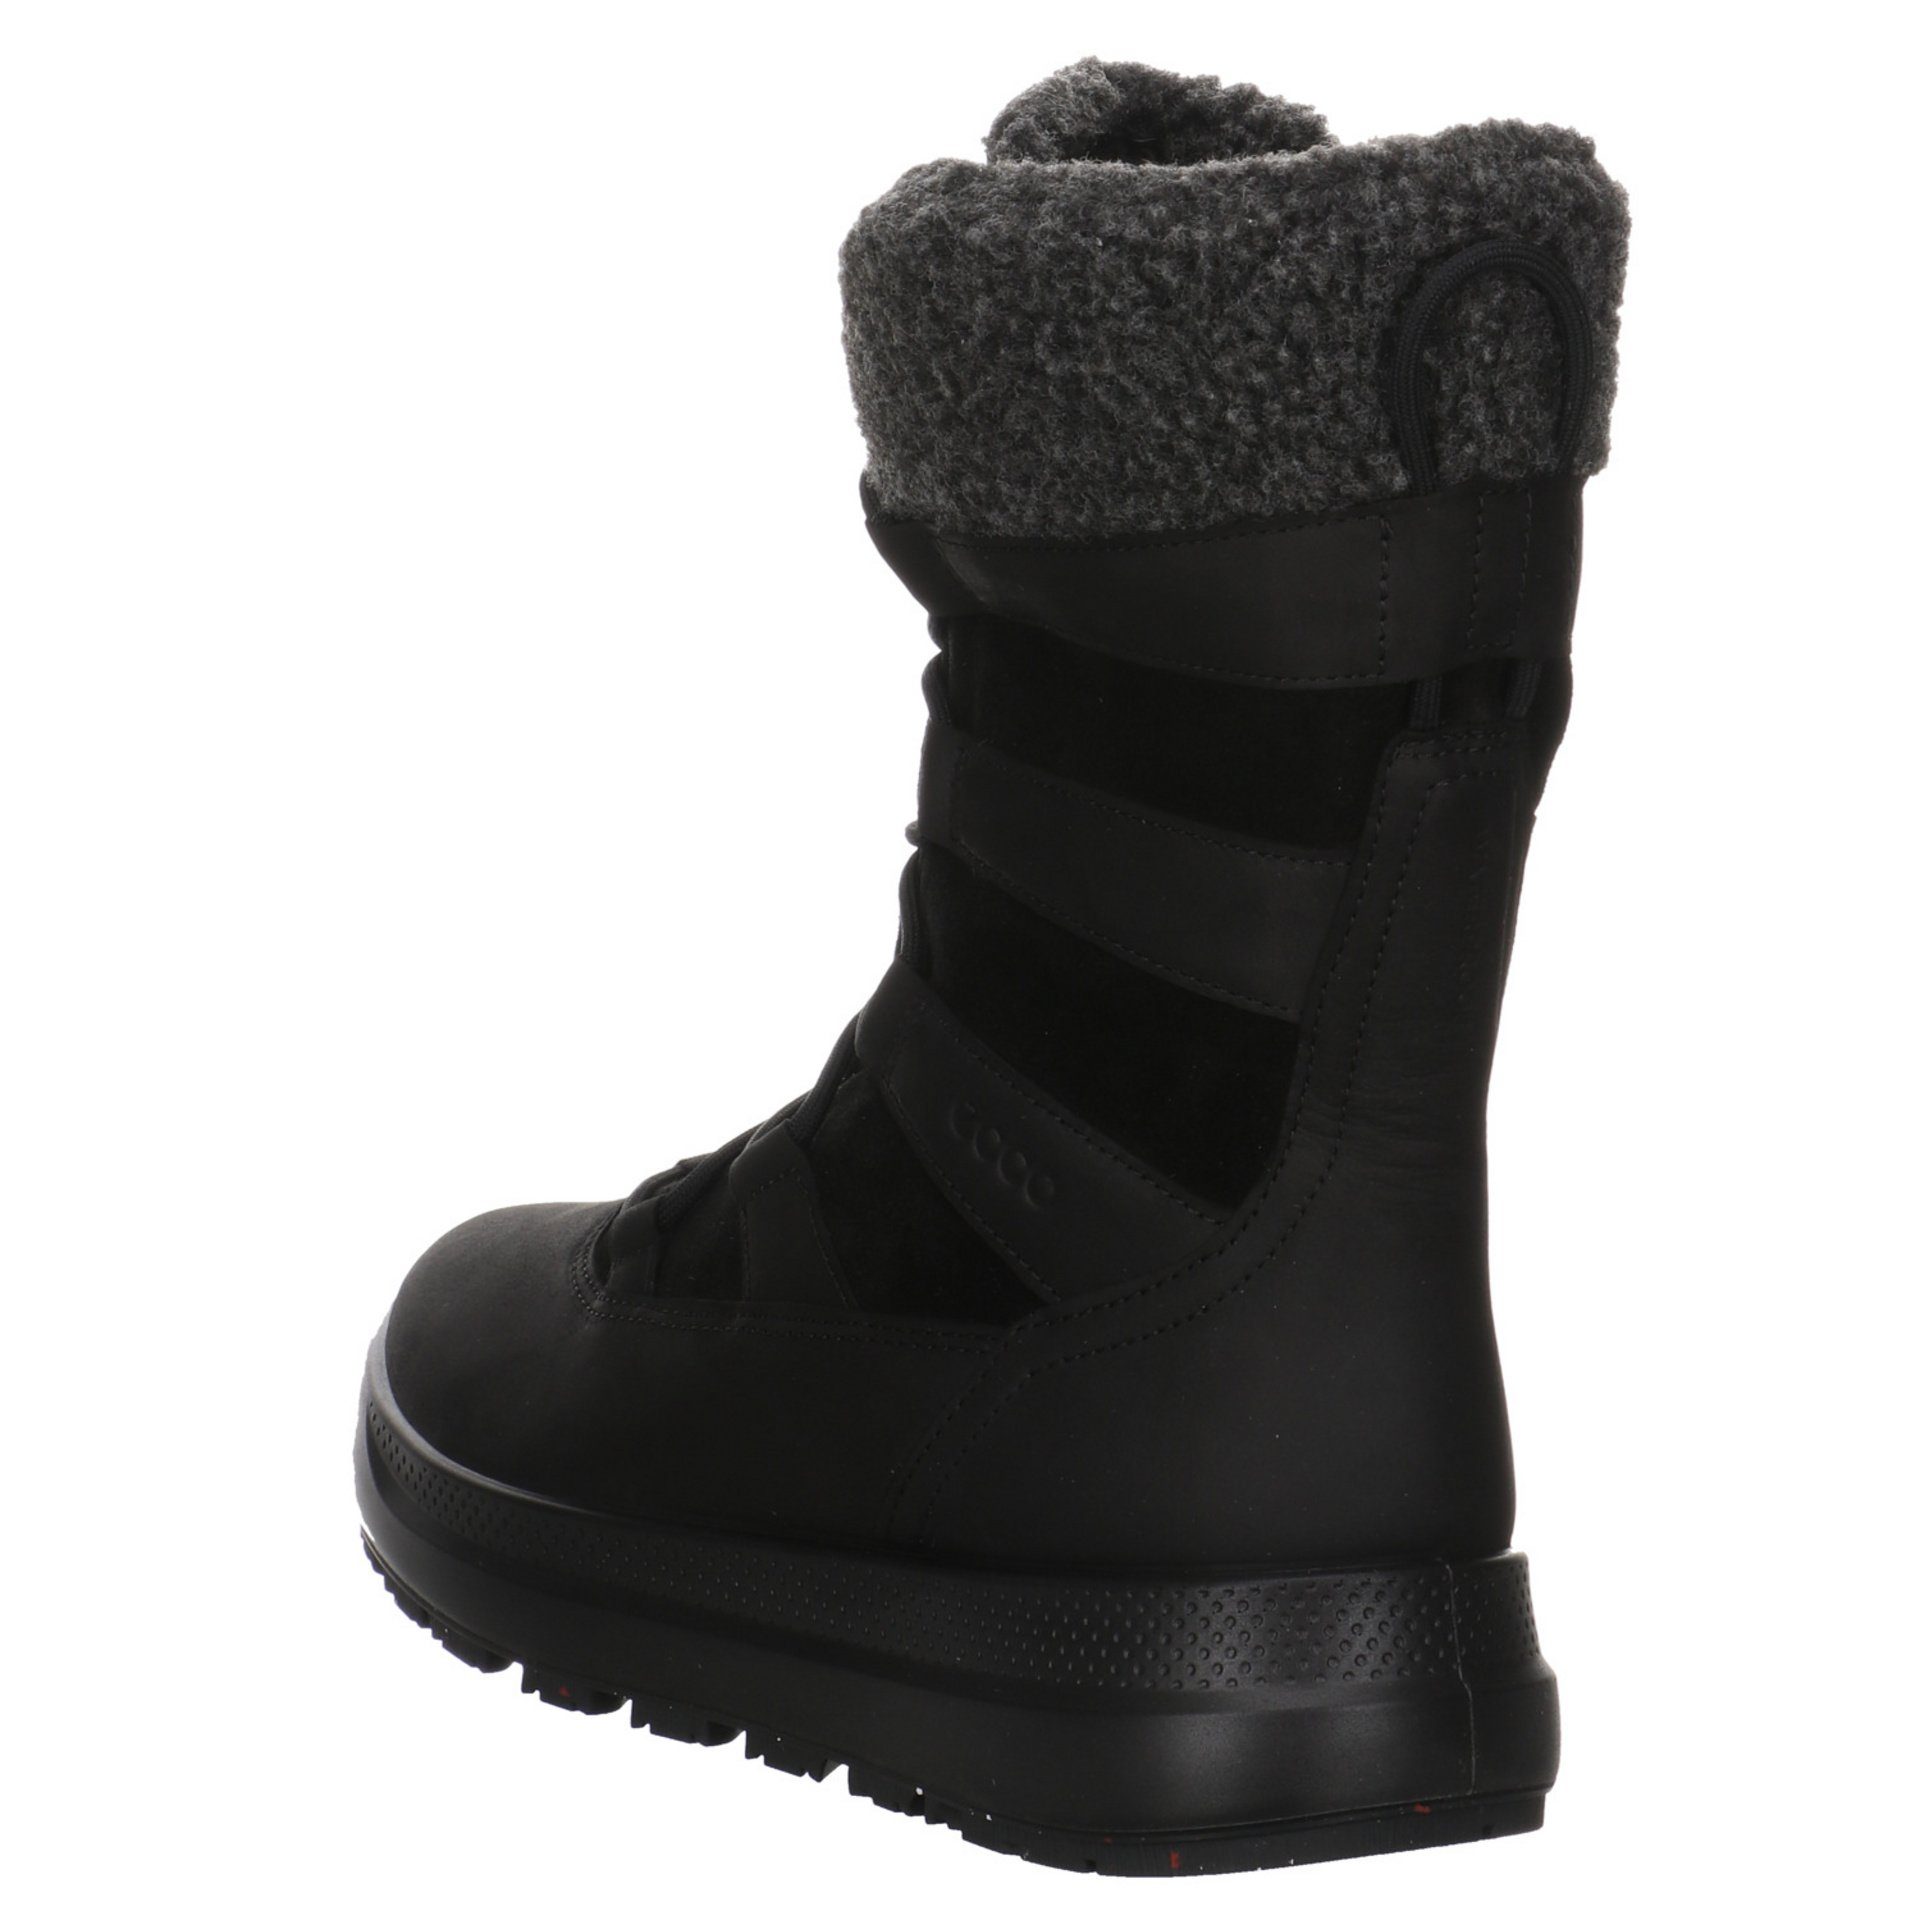 Ecco Damen Stiefel Schuhe Freizeit Leder-/Textilkombination BLACK/BLACK Solice Stiefel Elegant Boots